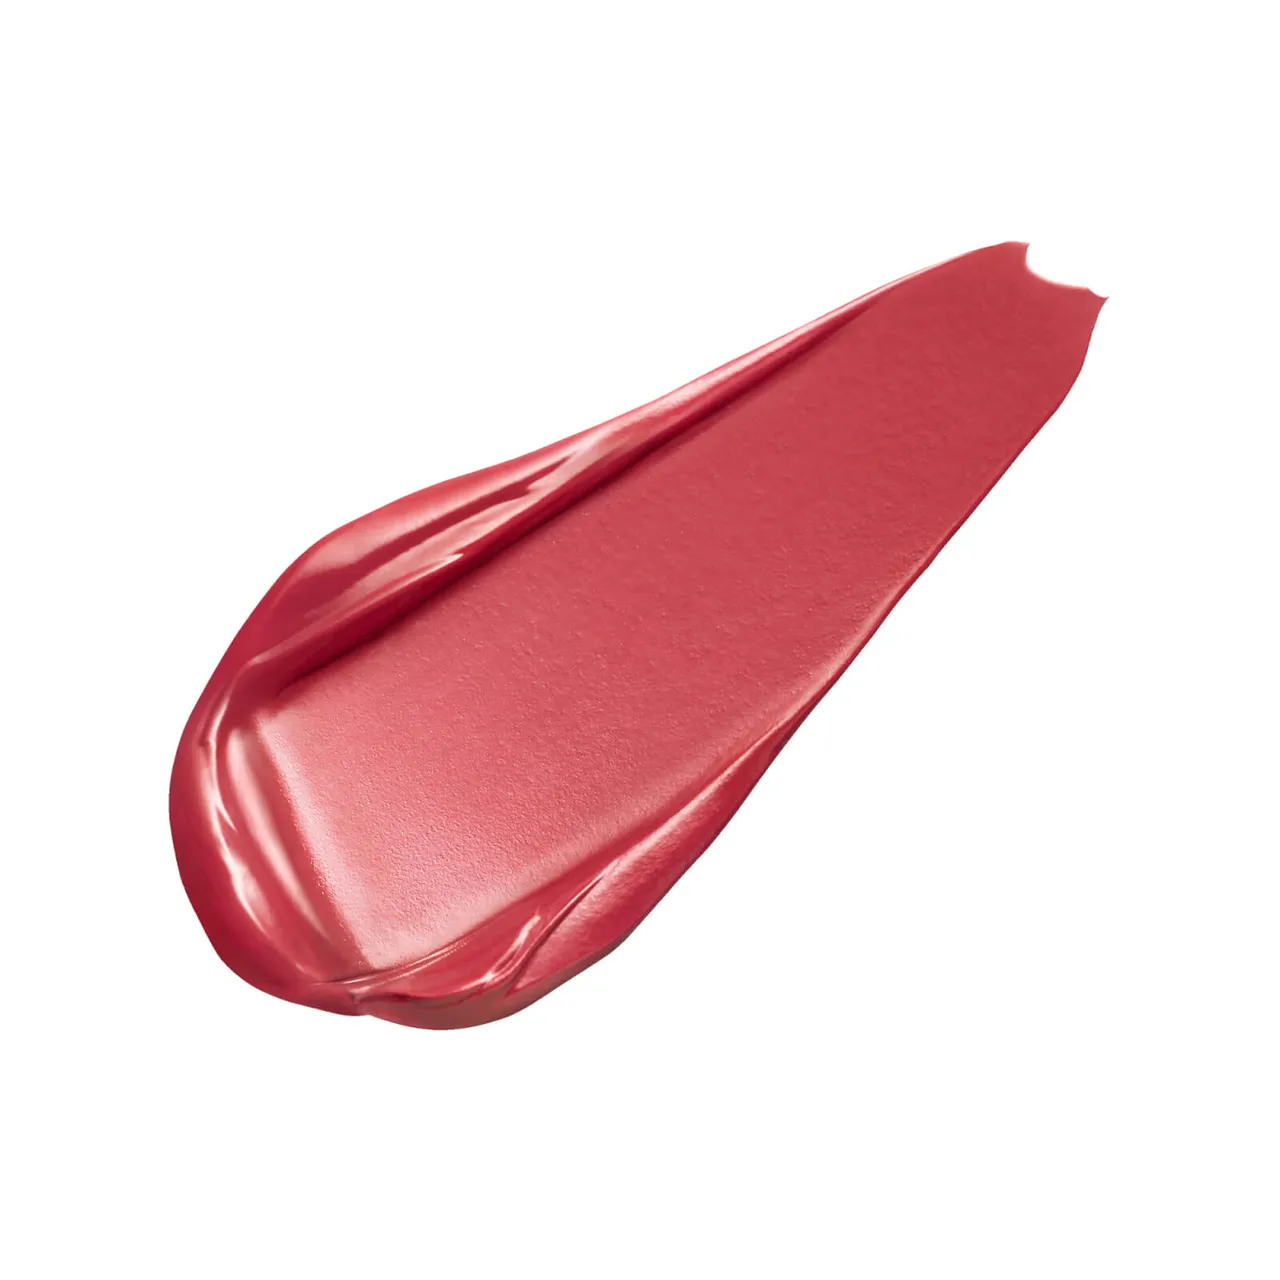 Clé de Peau Beauté Exclusive Cream Rouge Shine Lipstick 8ml (Various Shades) - 204 Maraca Ginger